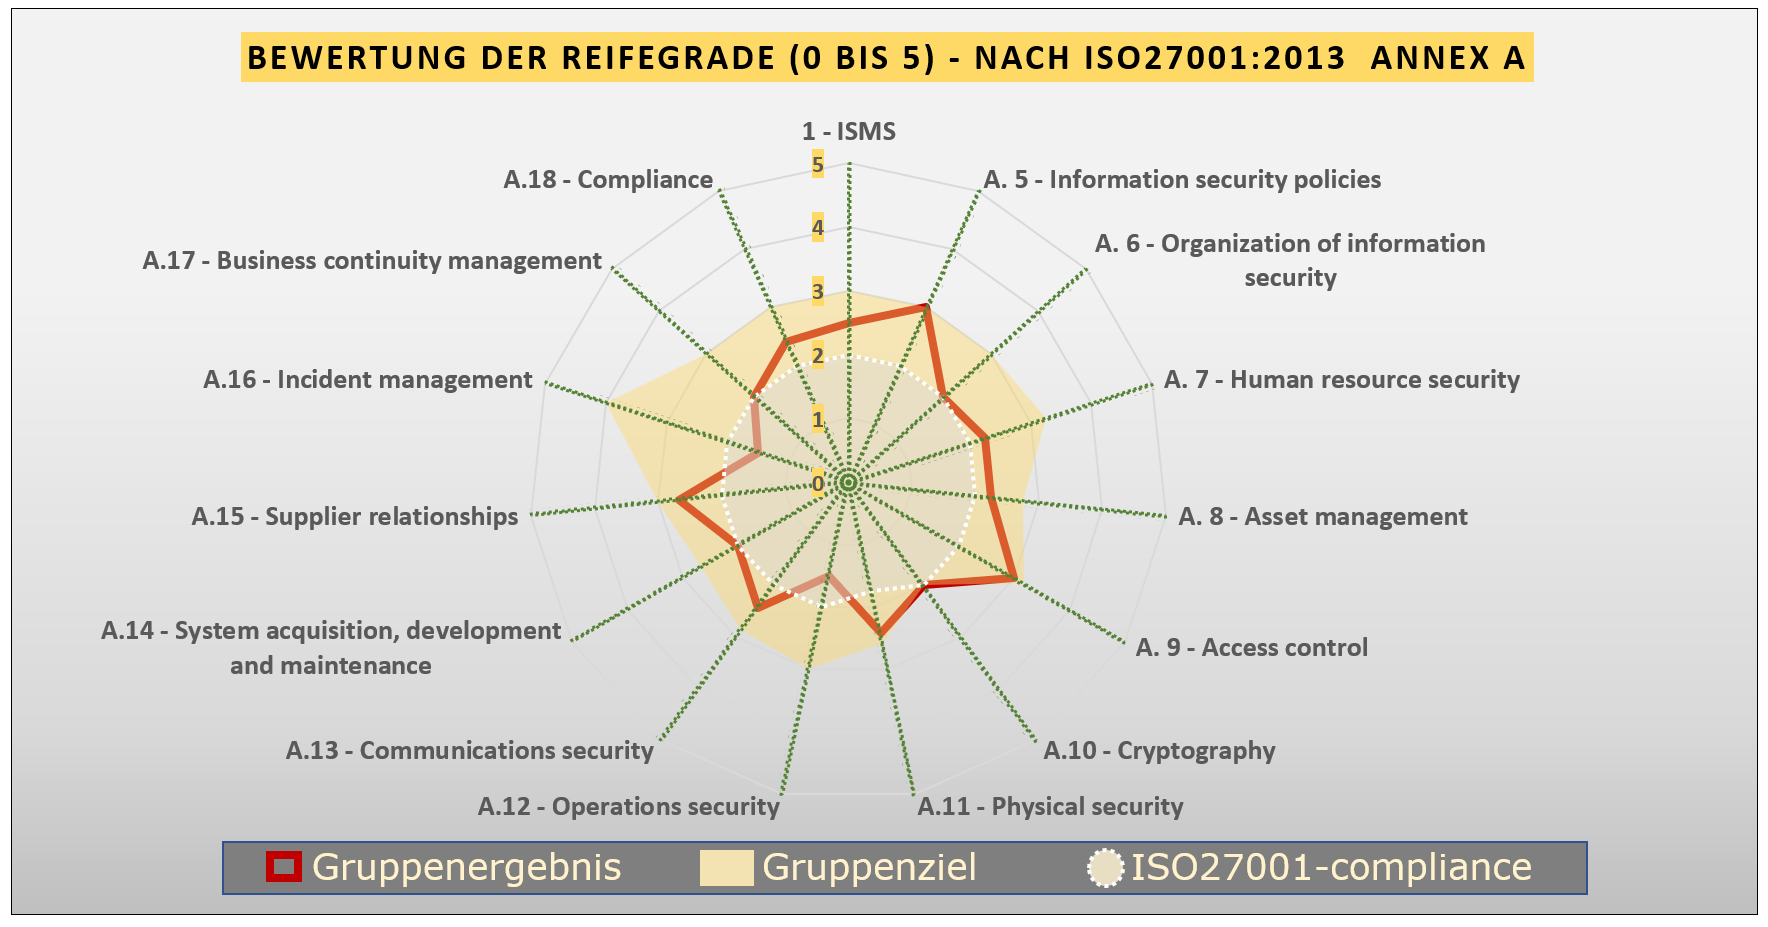 Grafik: Netzdiagramm mit Beispiel einer Reifegradbeurteilung nach ISO27001:2013 Annex A